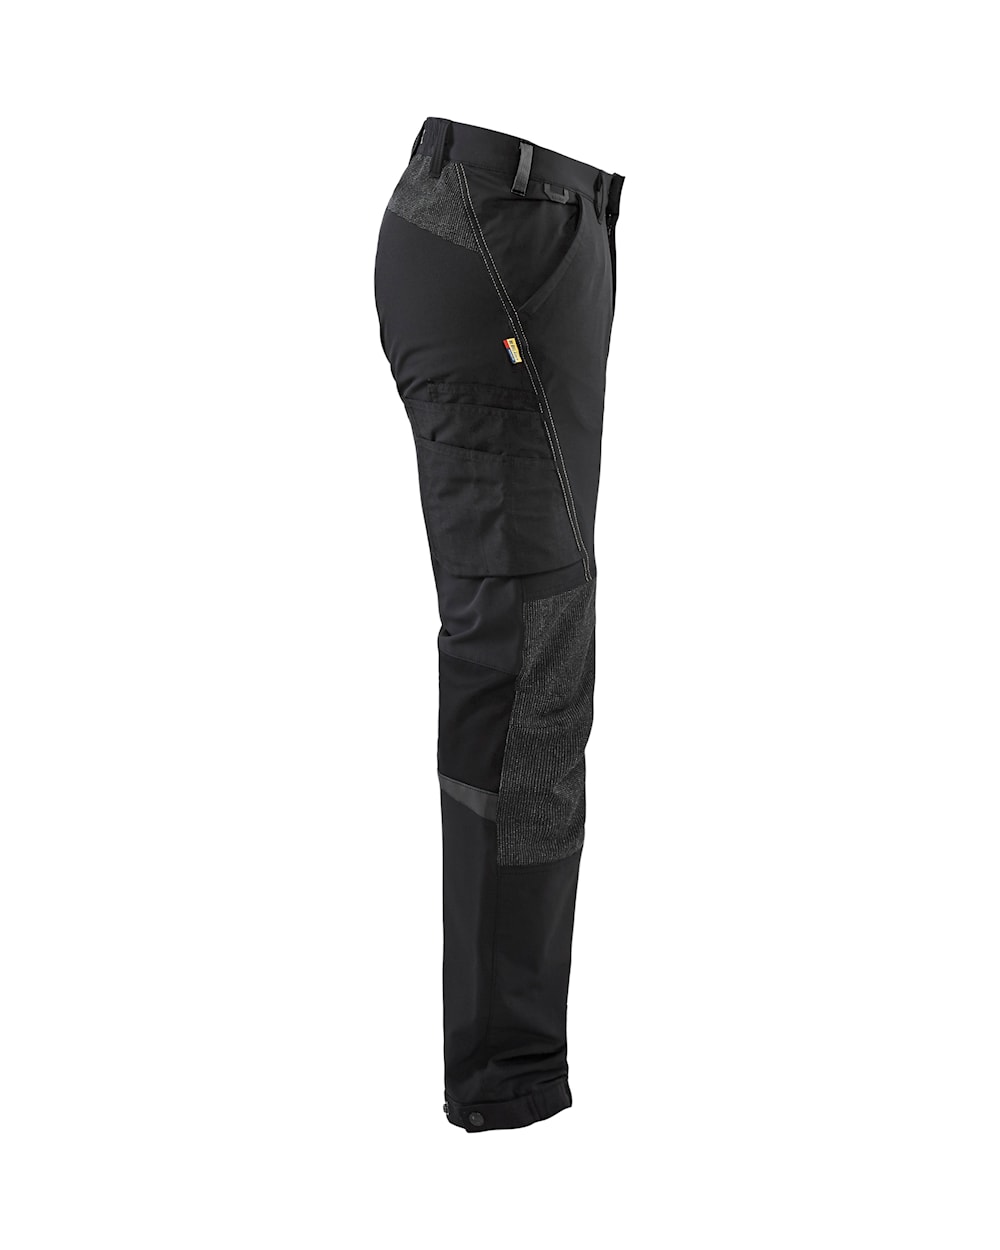 Blaklader 4-Way-Stretch Service Trousers 1422 - Black / Dark Grey